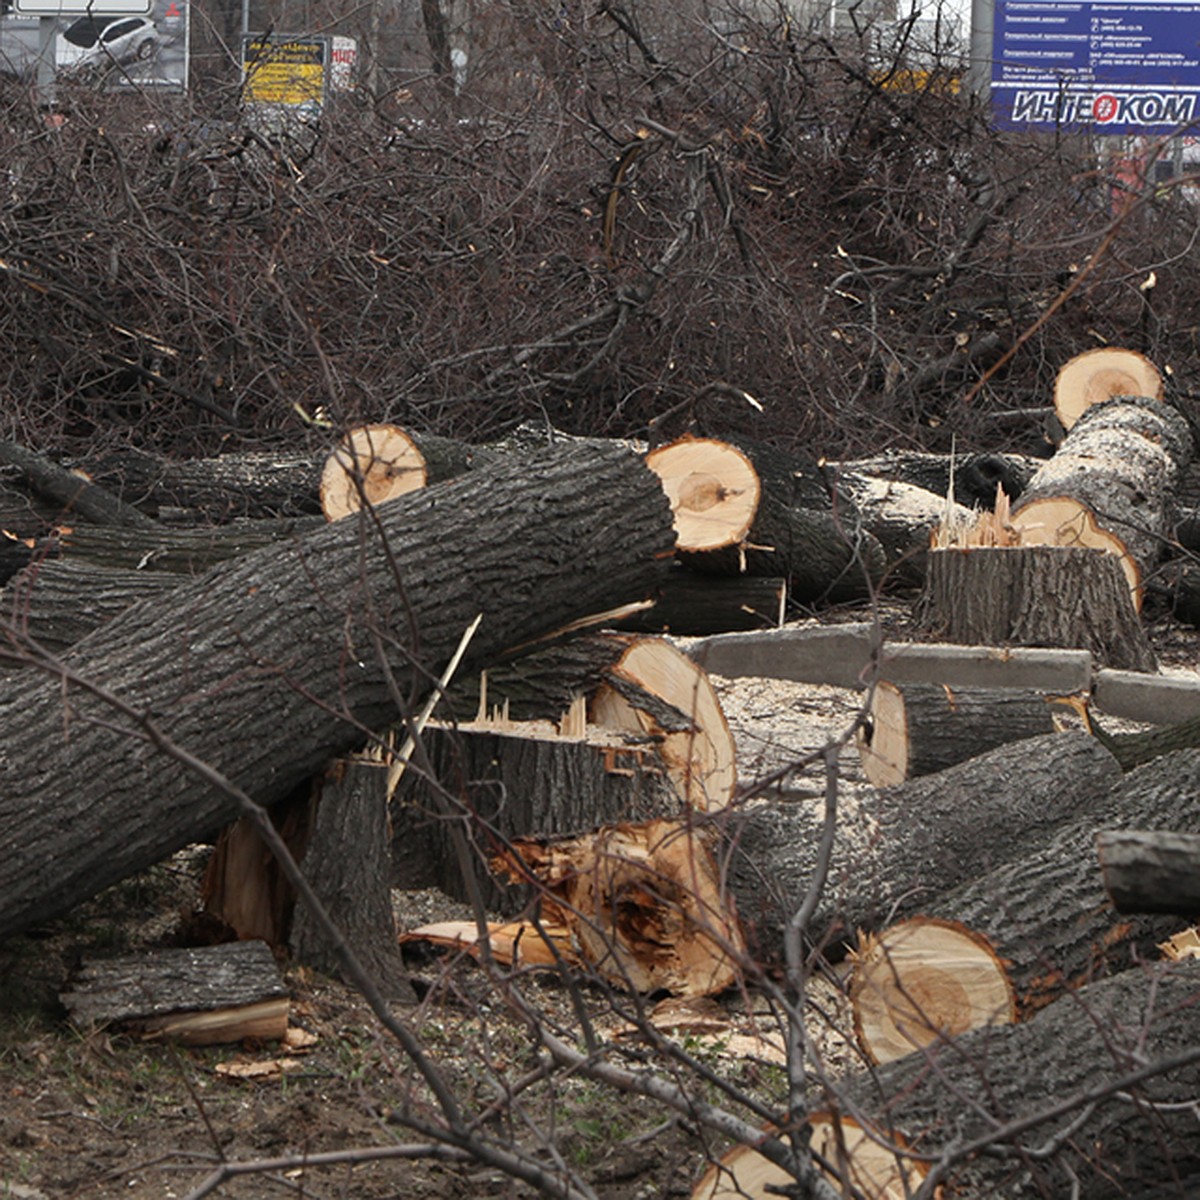 Зачем в Мурманске вырубают деревья? Отвечаем на больной вопрос - KP.RU